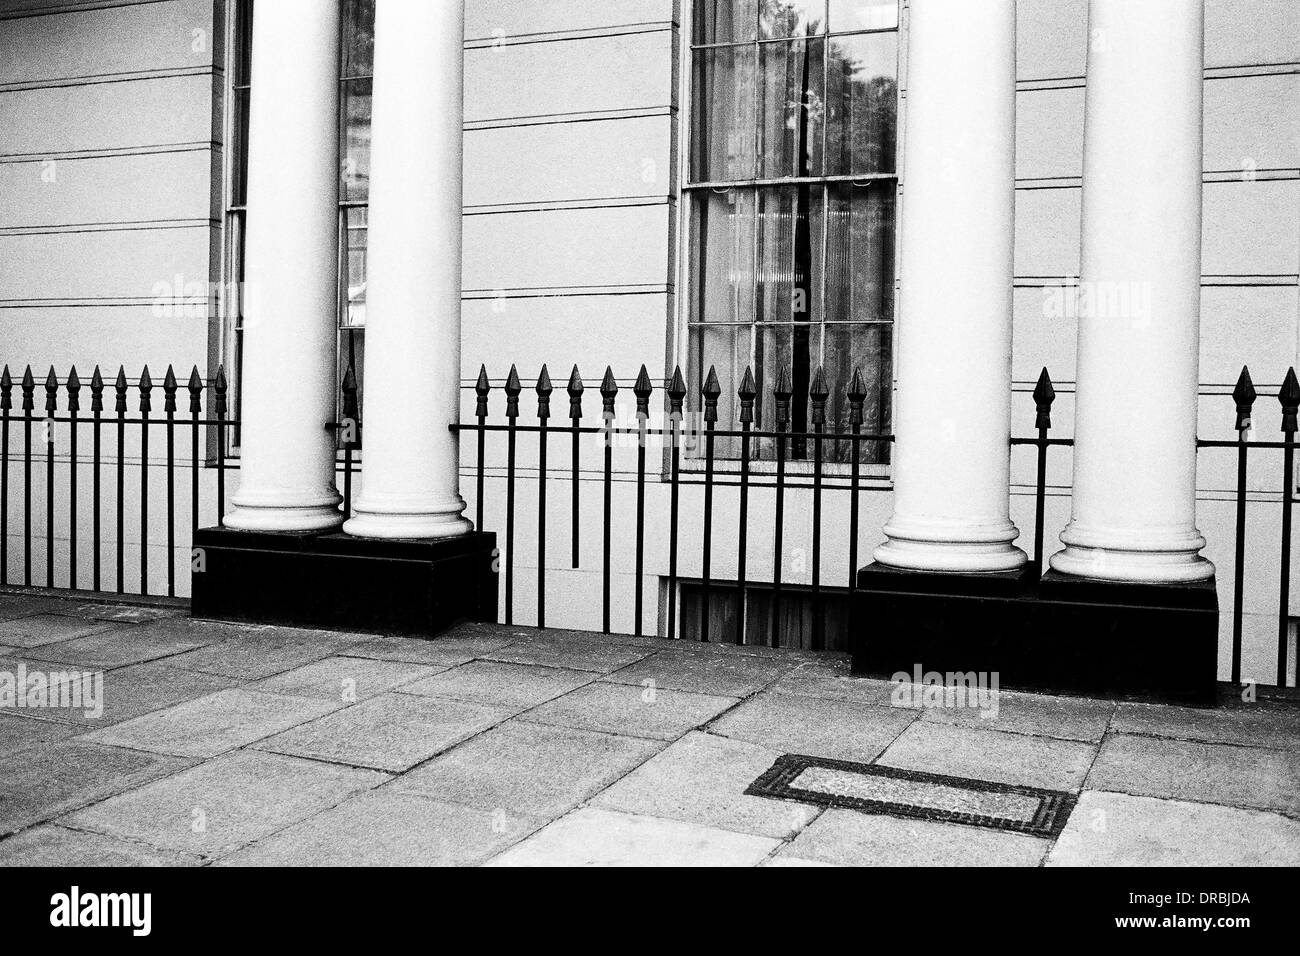 Montrant la chaussée clôture et piliers, Londres, Angleterre, Royaume-Uni, UK, 1986 Banque D'Images